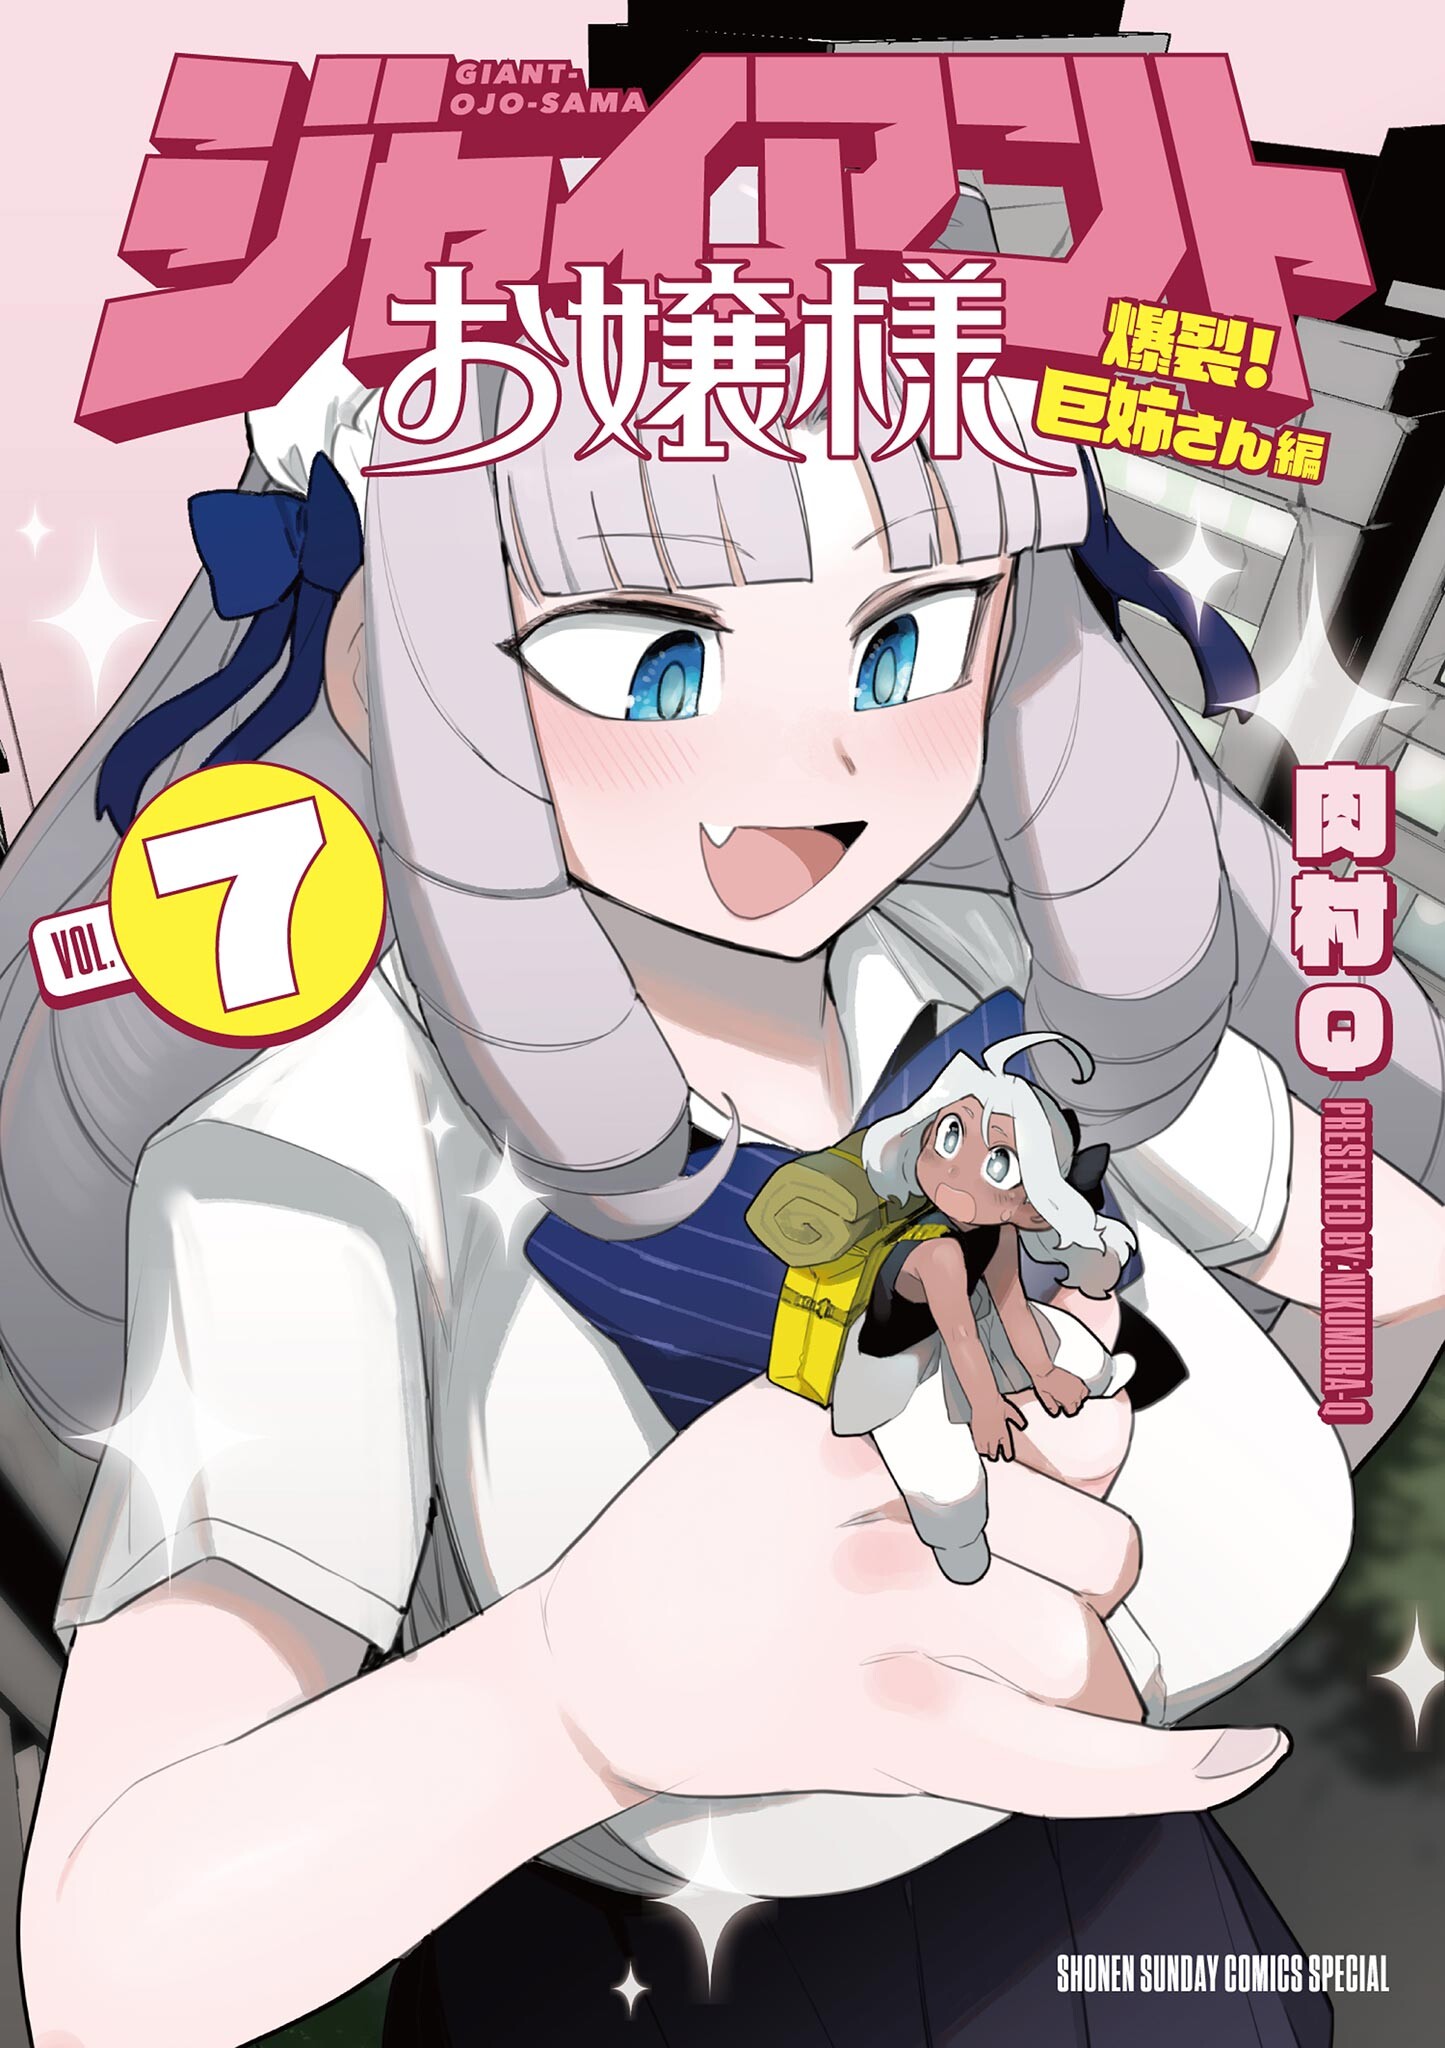 Anime giantess manga